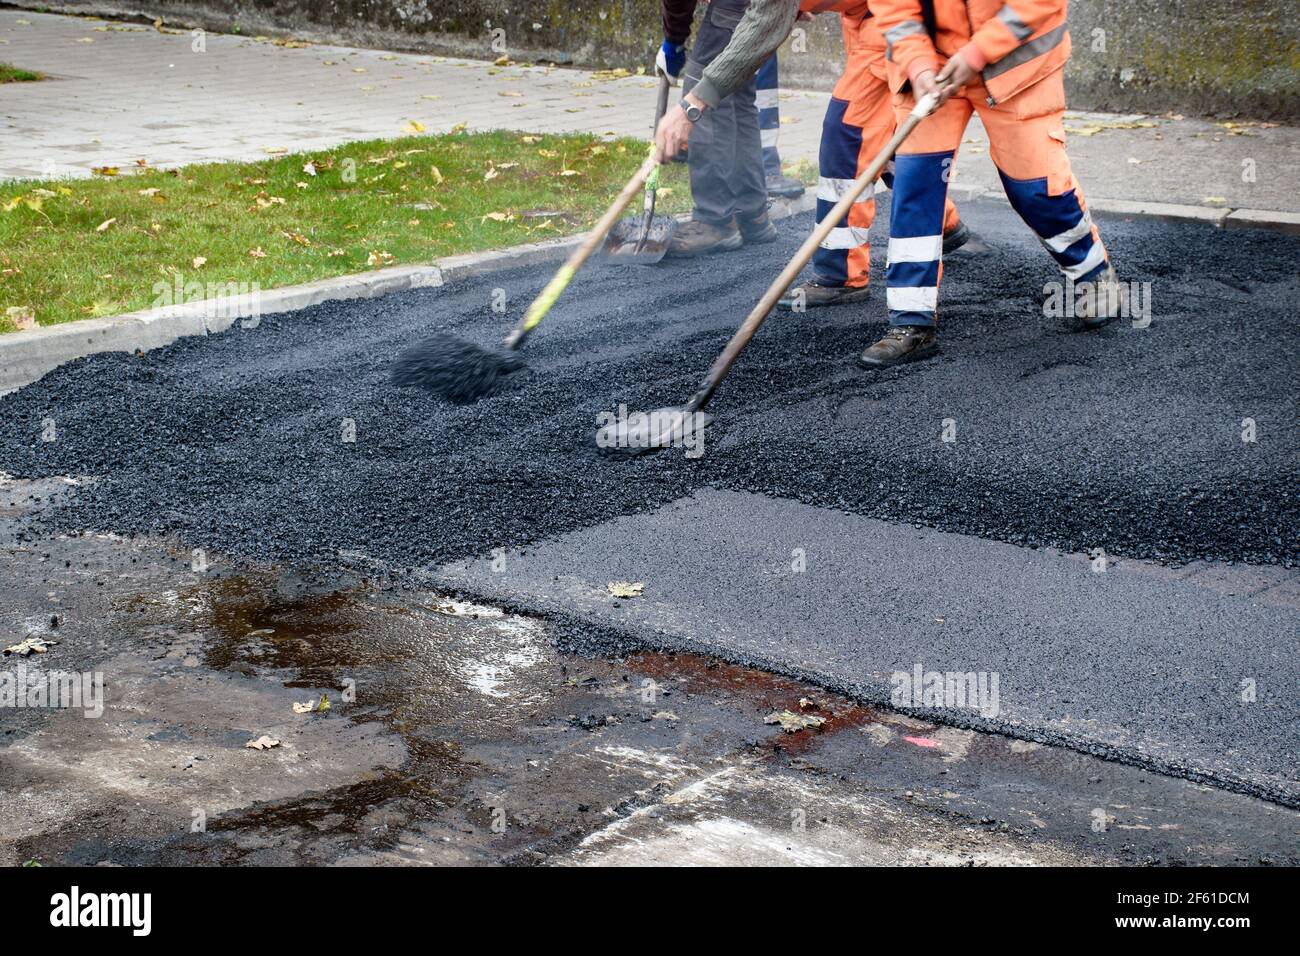 Les ouvriers du pavage déplacent très rapidement leurs pelles tout en ajustant la nouvelle couche d'asphalte dans la reconstruction de la route. Banque D'Images